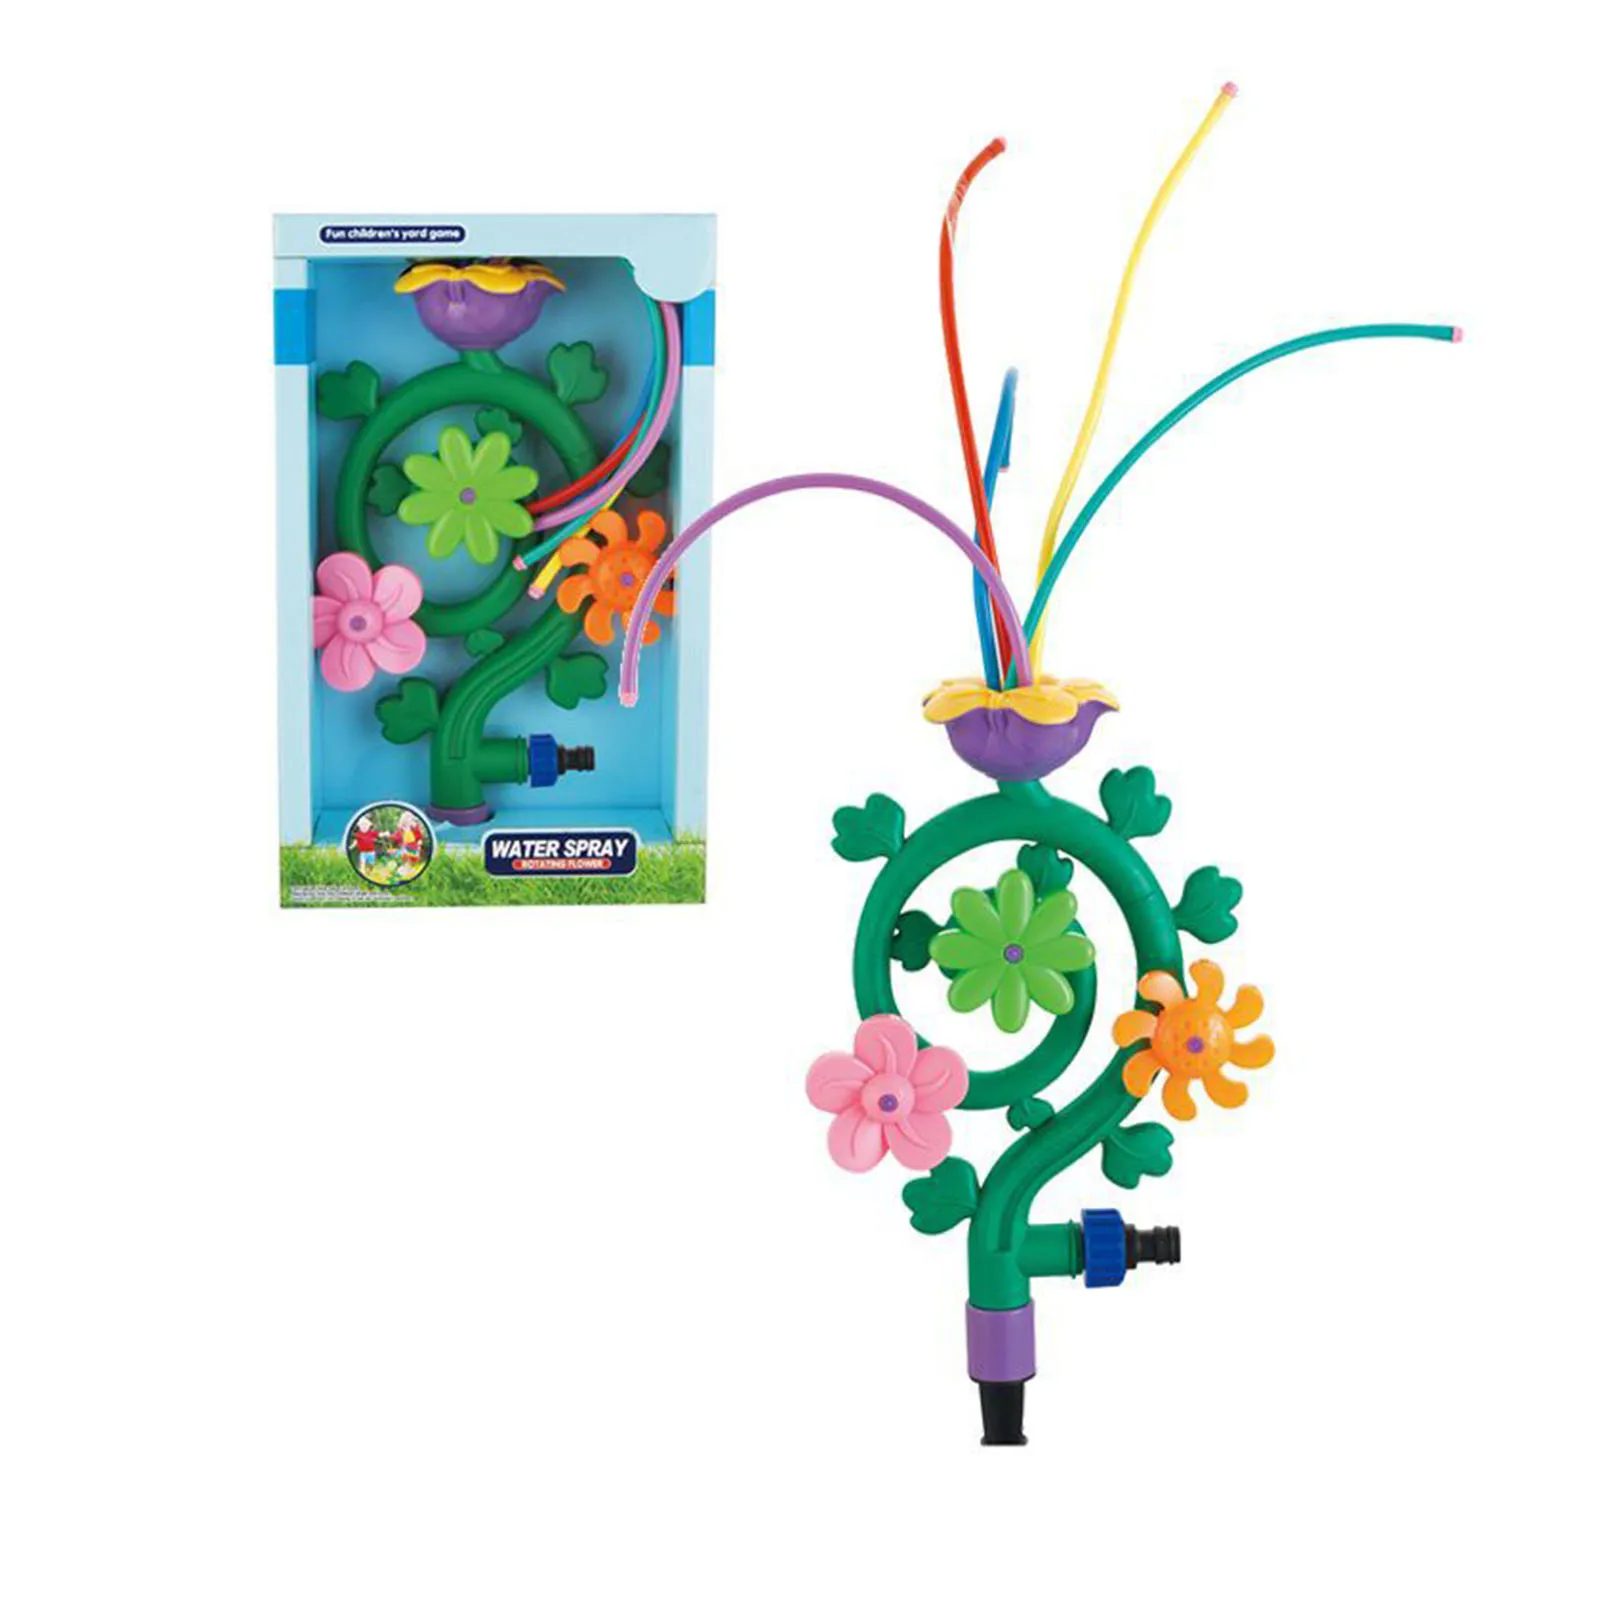 

Flower Sprinkler Toy Backyard Rotating Sprinkler With Swing Tube Splashing Toy For Summer Outside Garden Lawn Water Toys Gifts